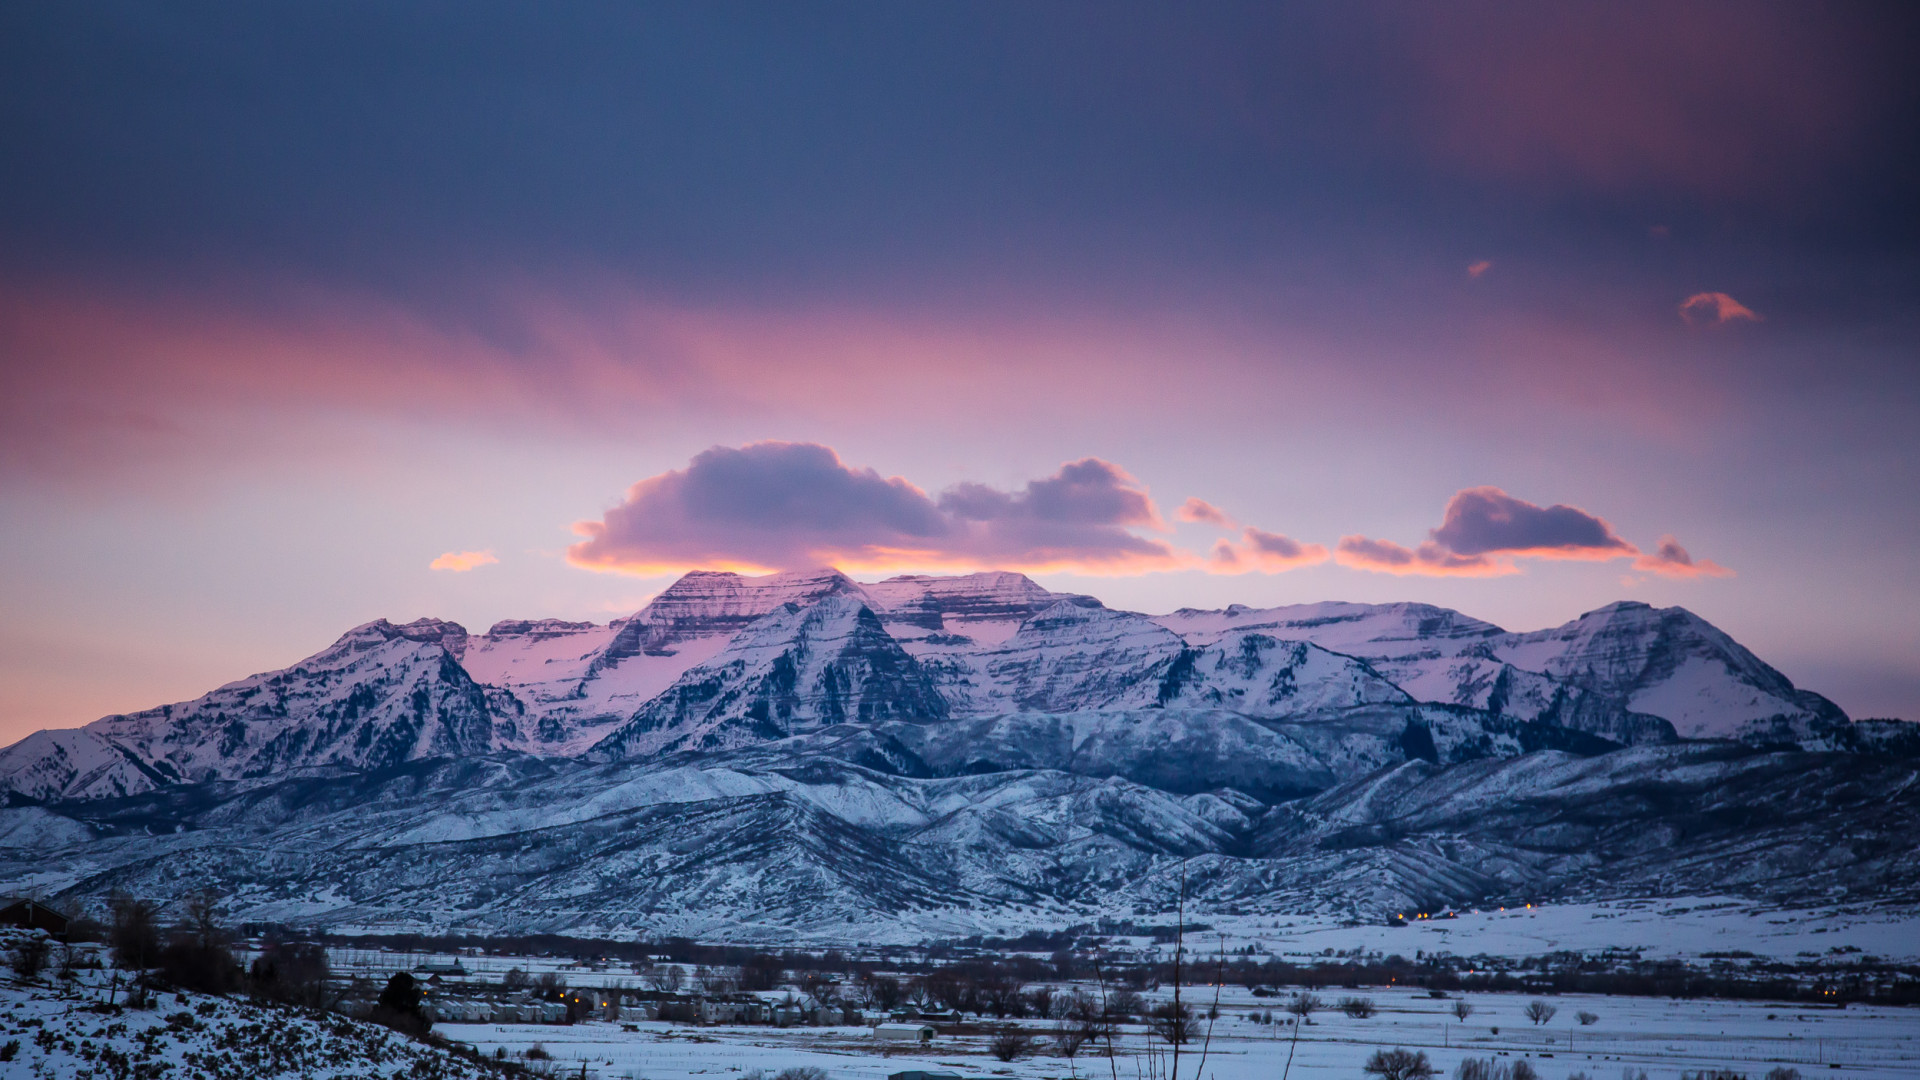 Mountain views at Sundance, Utah